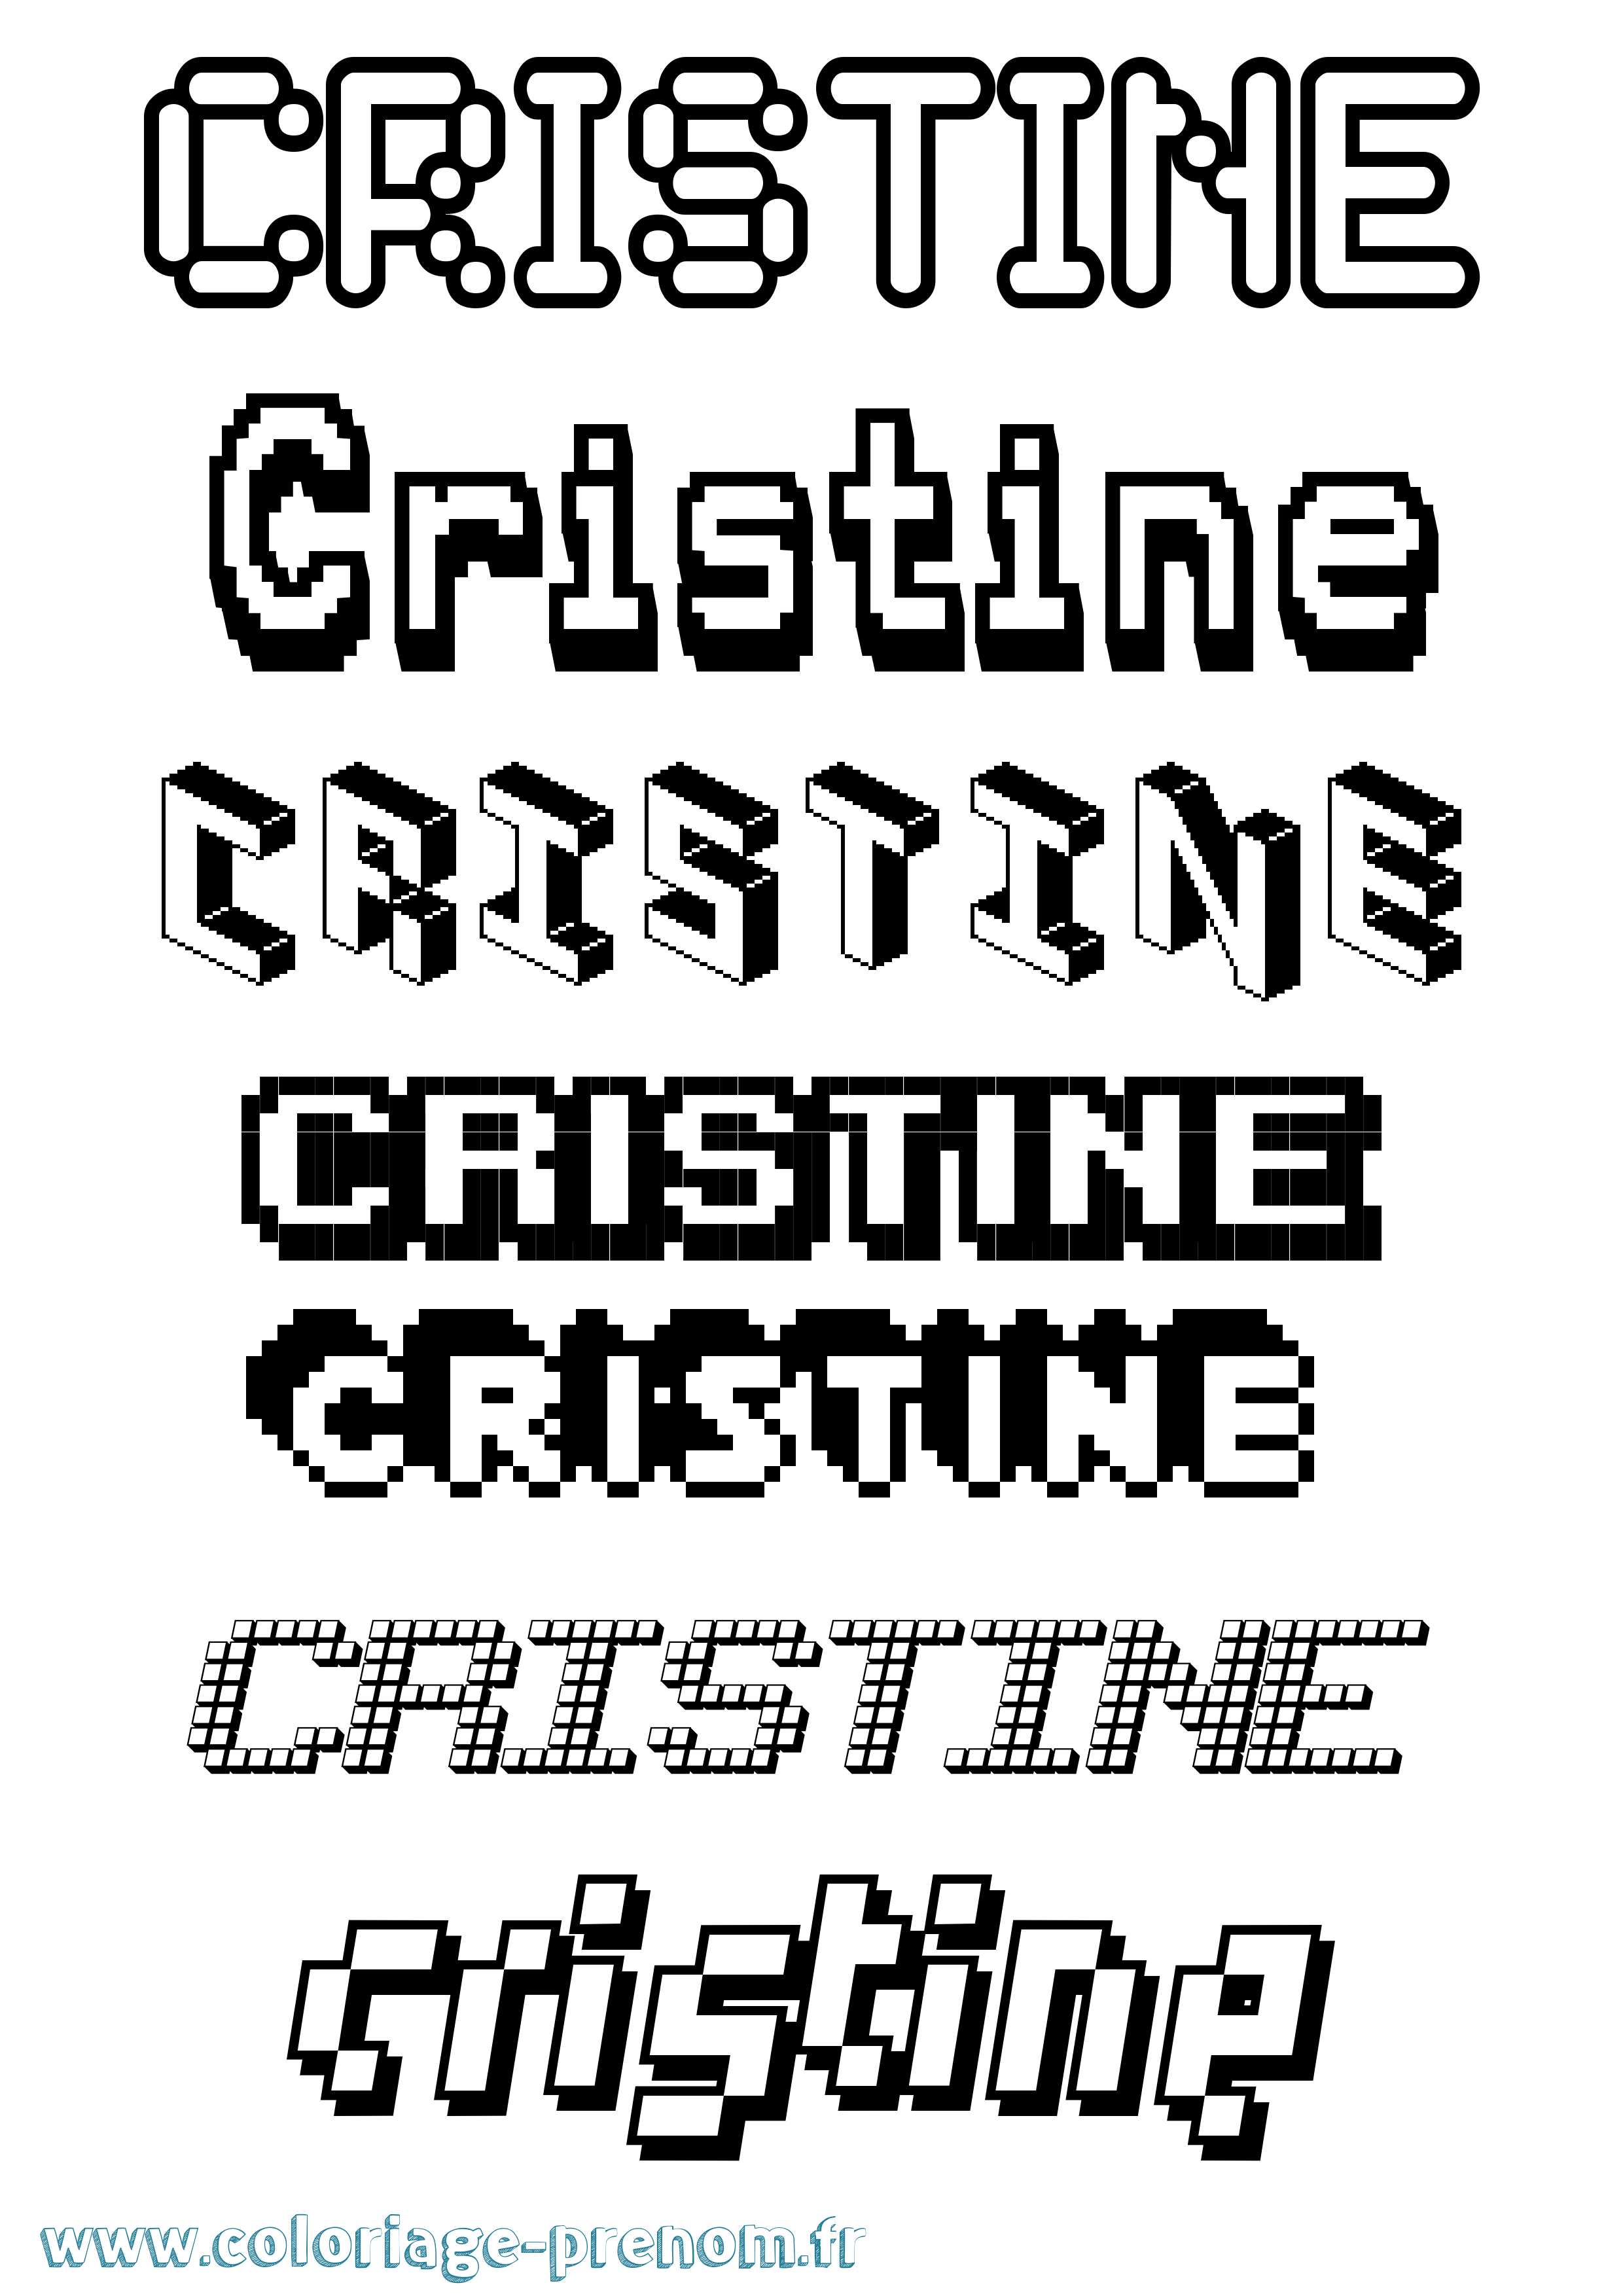 Coloriage prénom Cristine Pixel